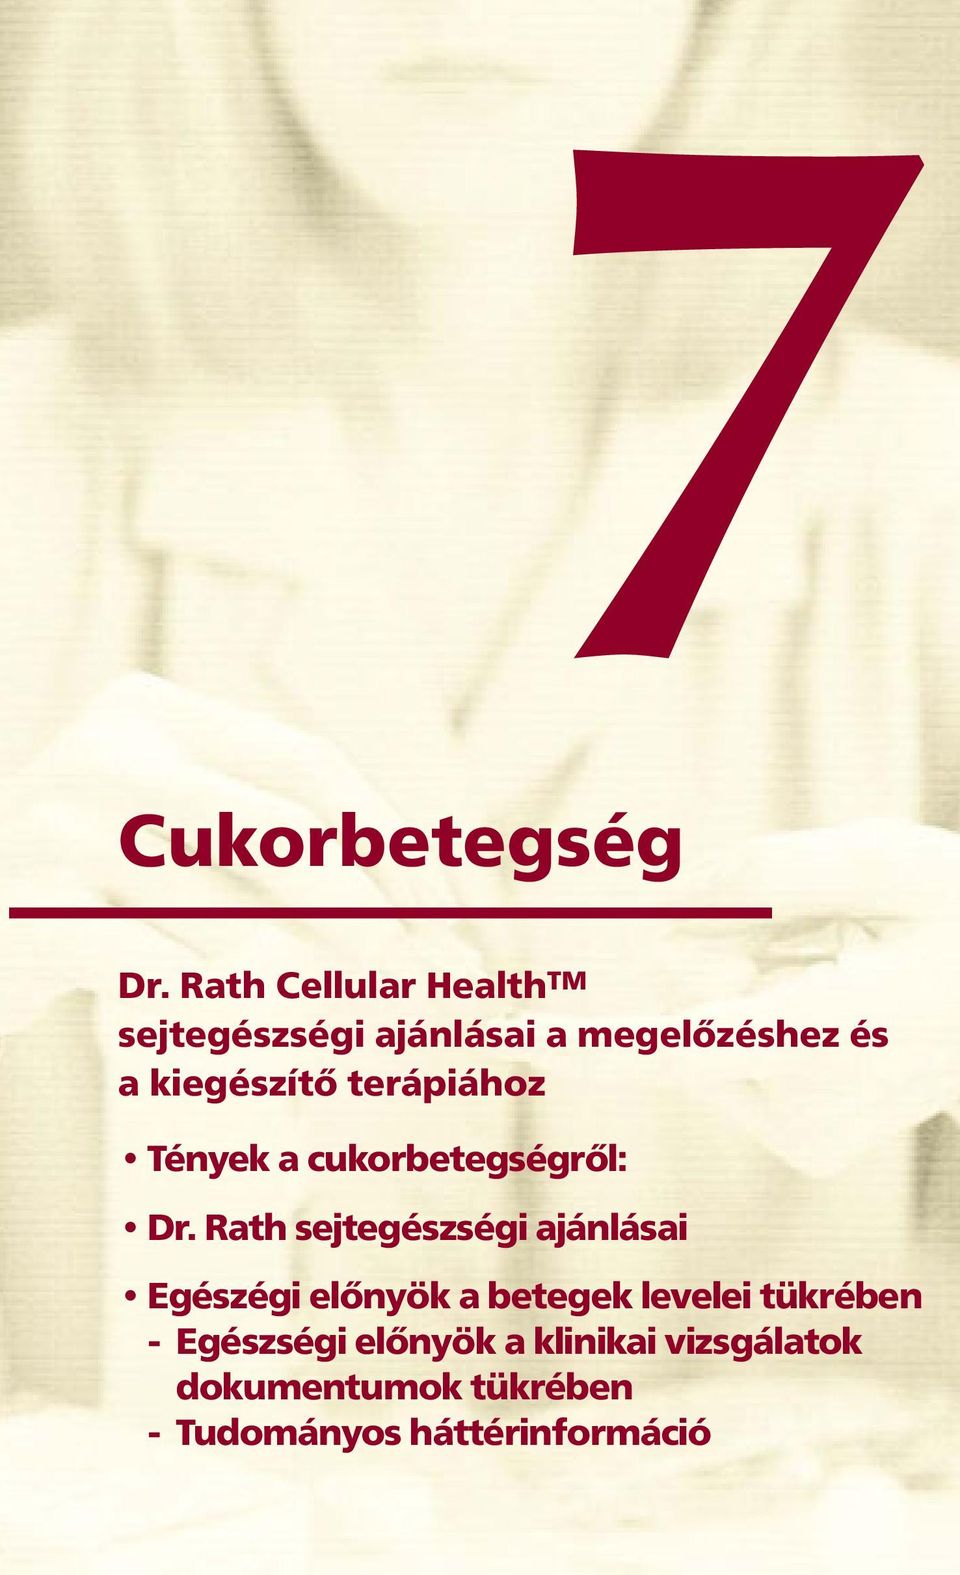 cellular cukorbetegség kezelésében)